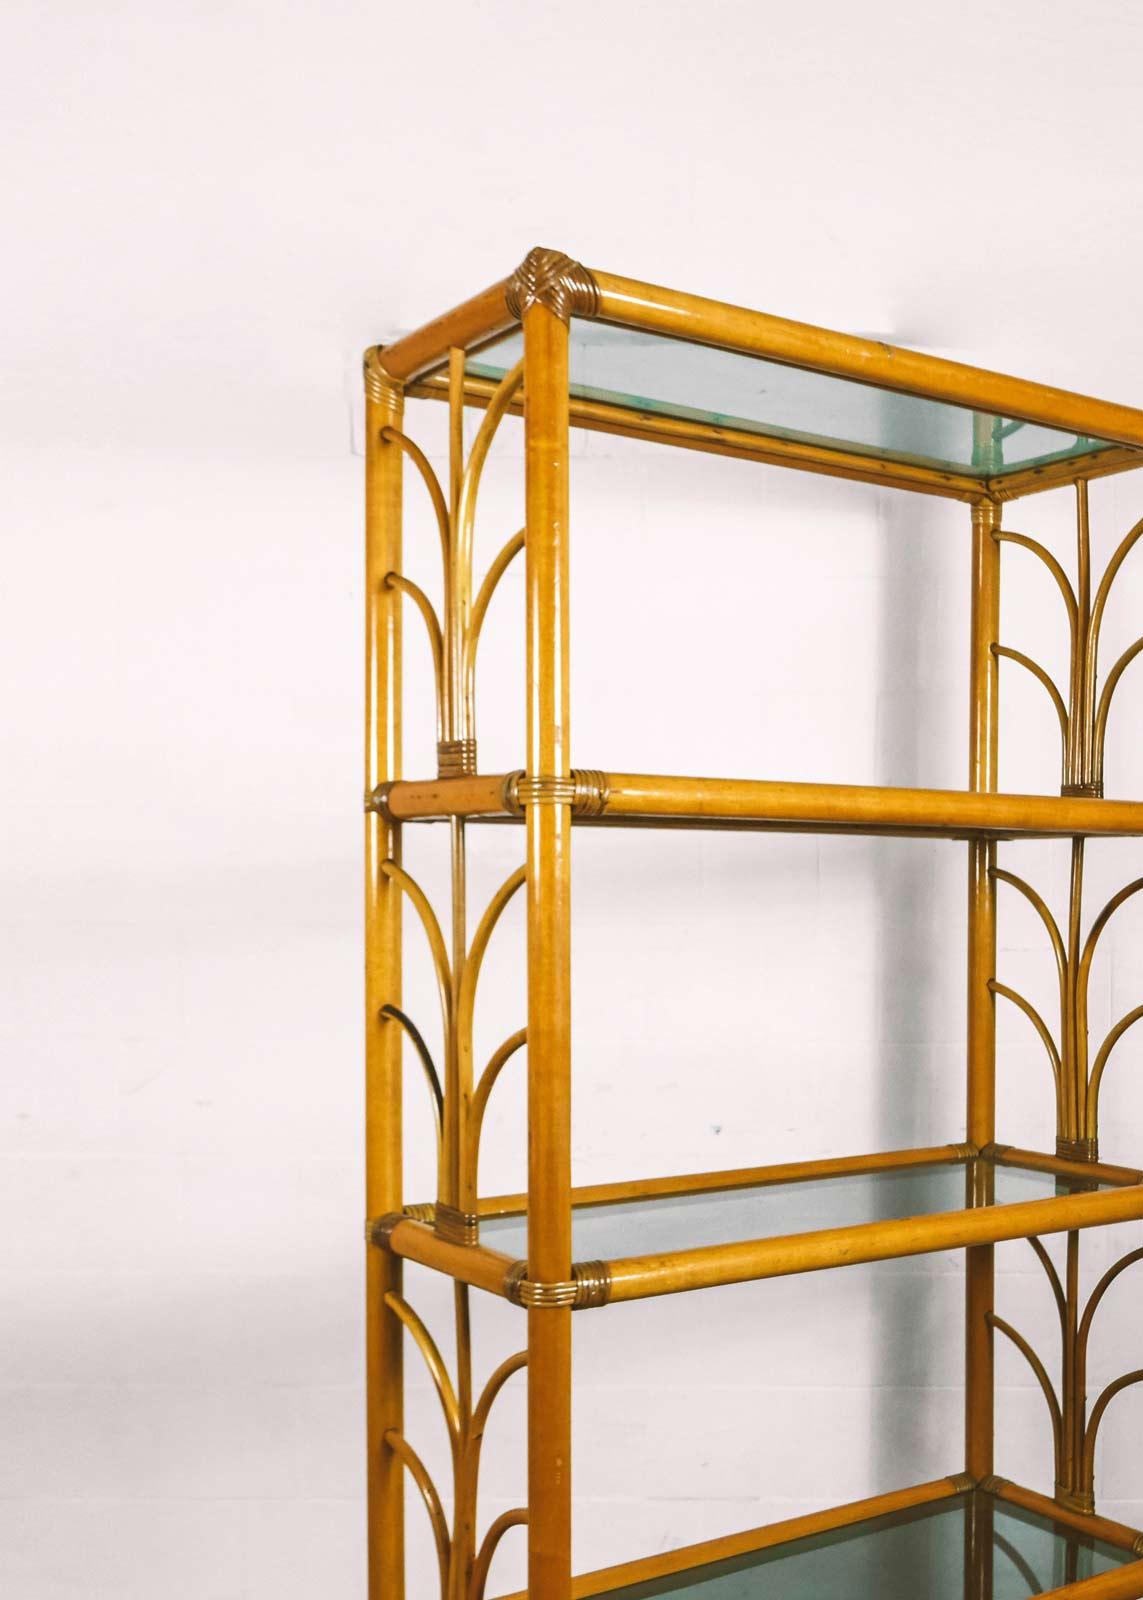 Wunderschönes Bücherregal aus den 80er Jahren mit Bambusstruktur. Das Bücherregal verfügt über 5 Glasböden und hat eine stabile und solide Struktur. Er wird Ihrem Wohnzimmer einen einzigartigen Retro-Touch verleihen.
Auch in kleineren Größen